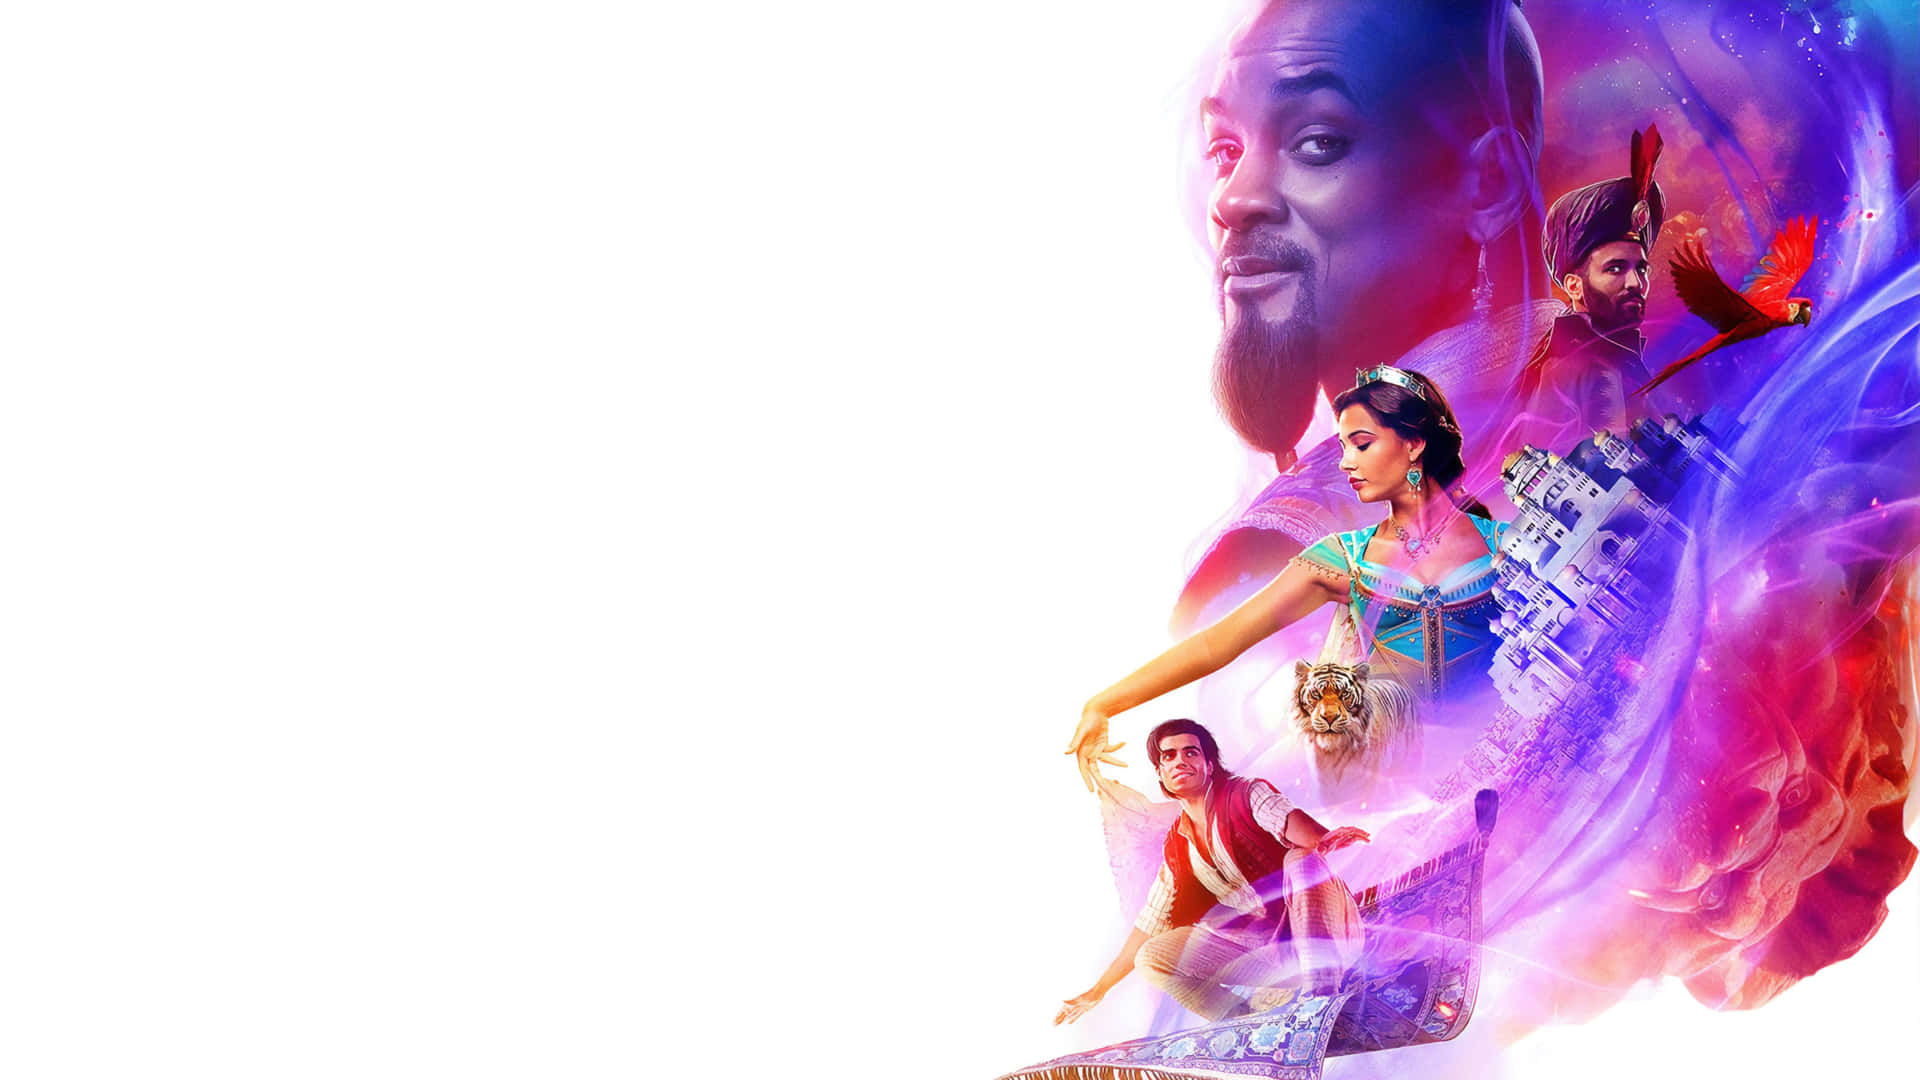 Lilla og rosa Aladdin 1440p Disney baggrund